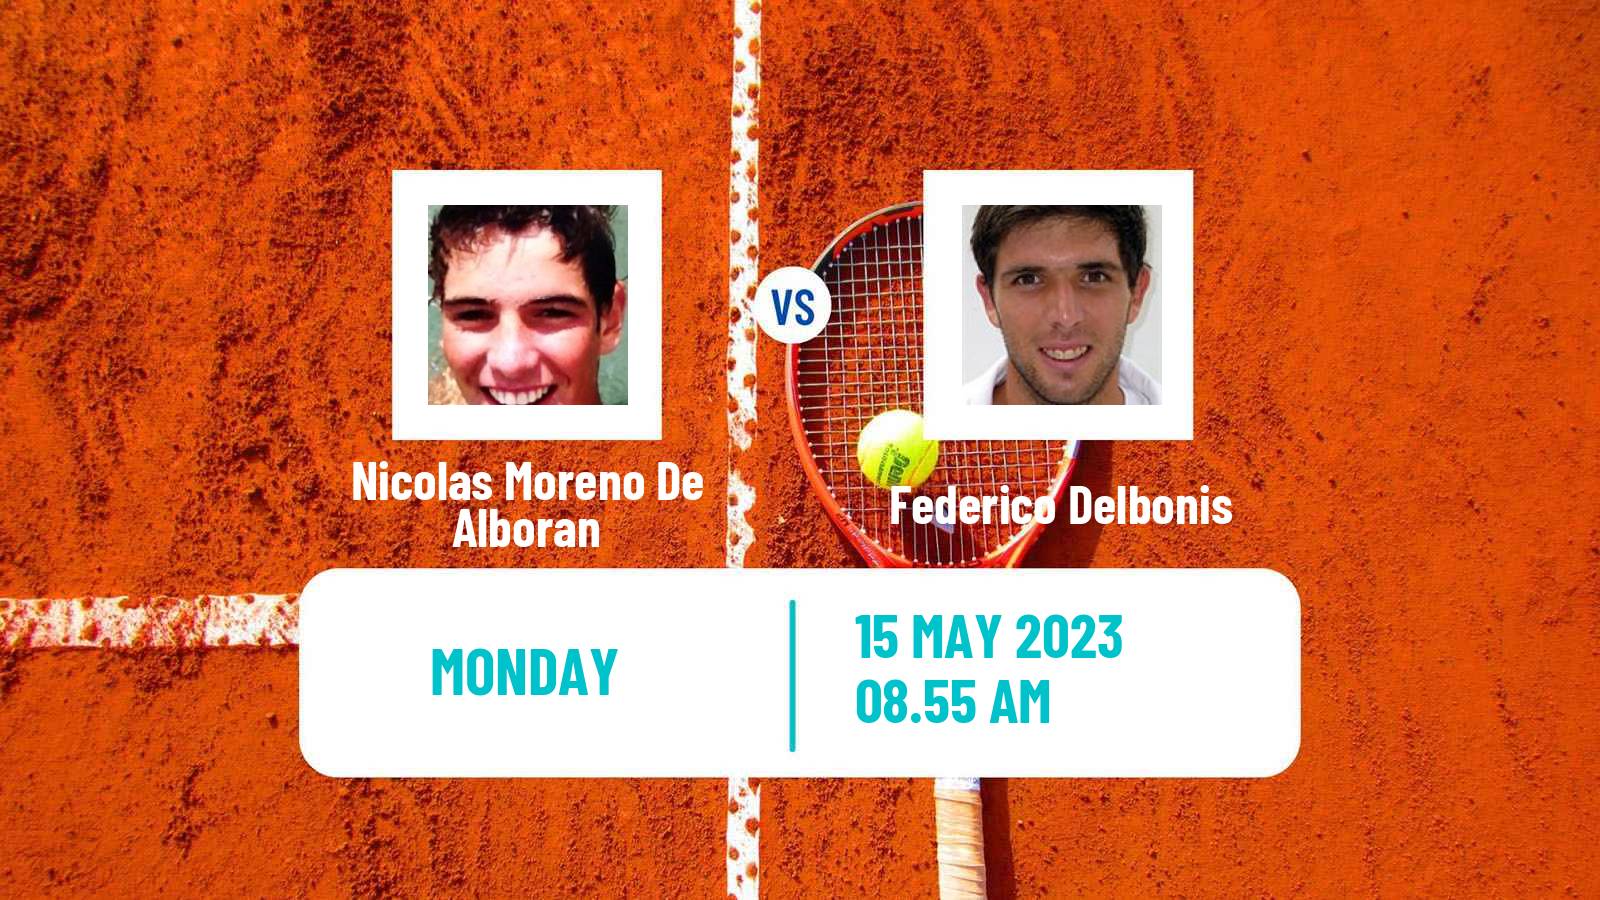 Tennis ATP Challenger Nicolas Moreno De Alboran - Federico Delbonis